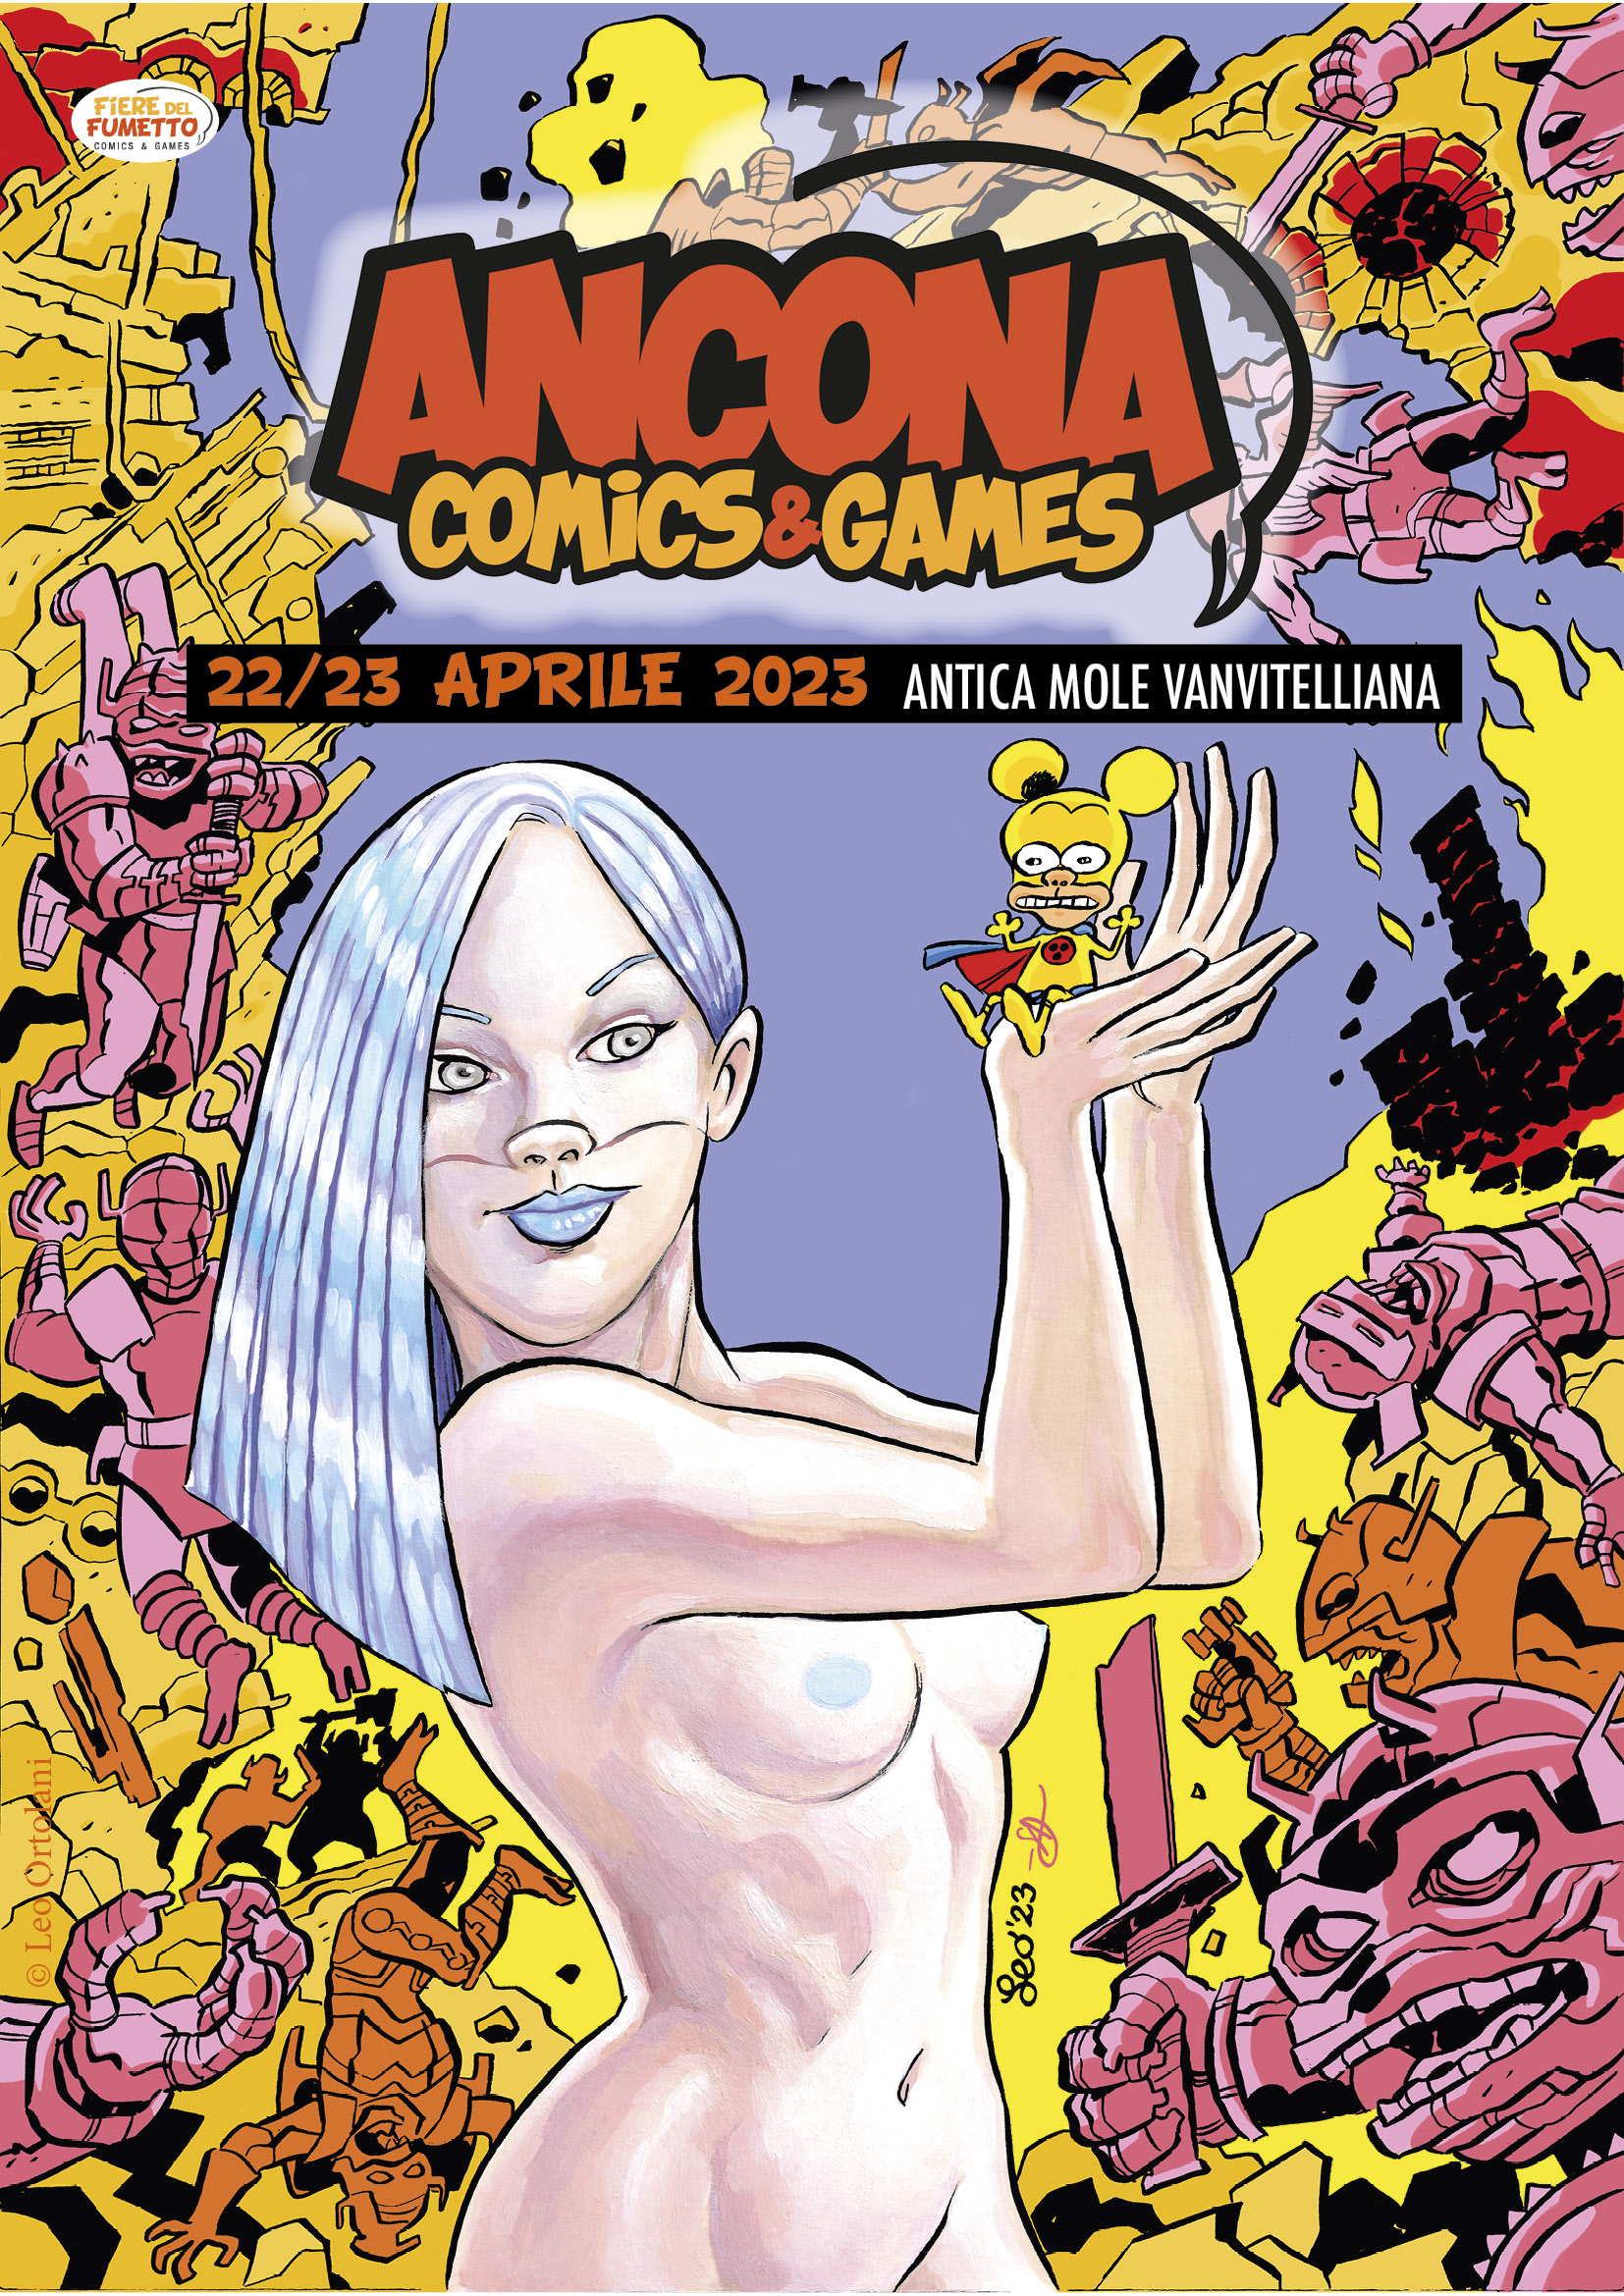 Boom di presenze ad Ancona Comics&Games